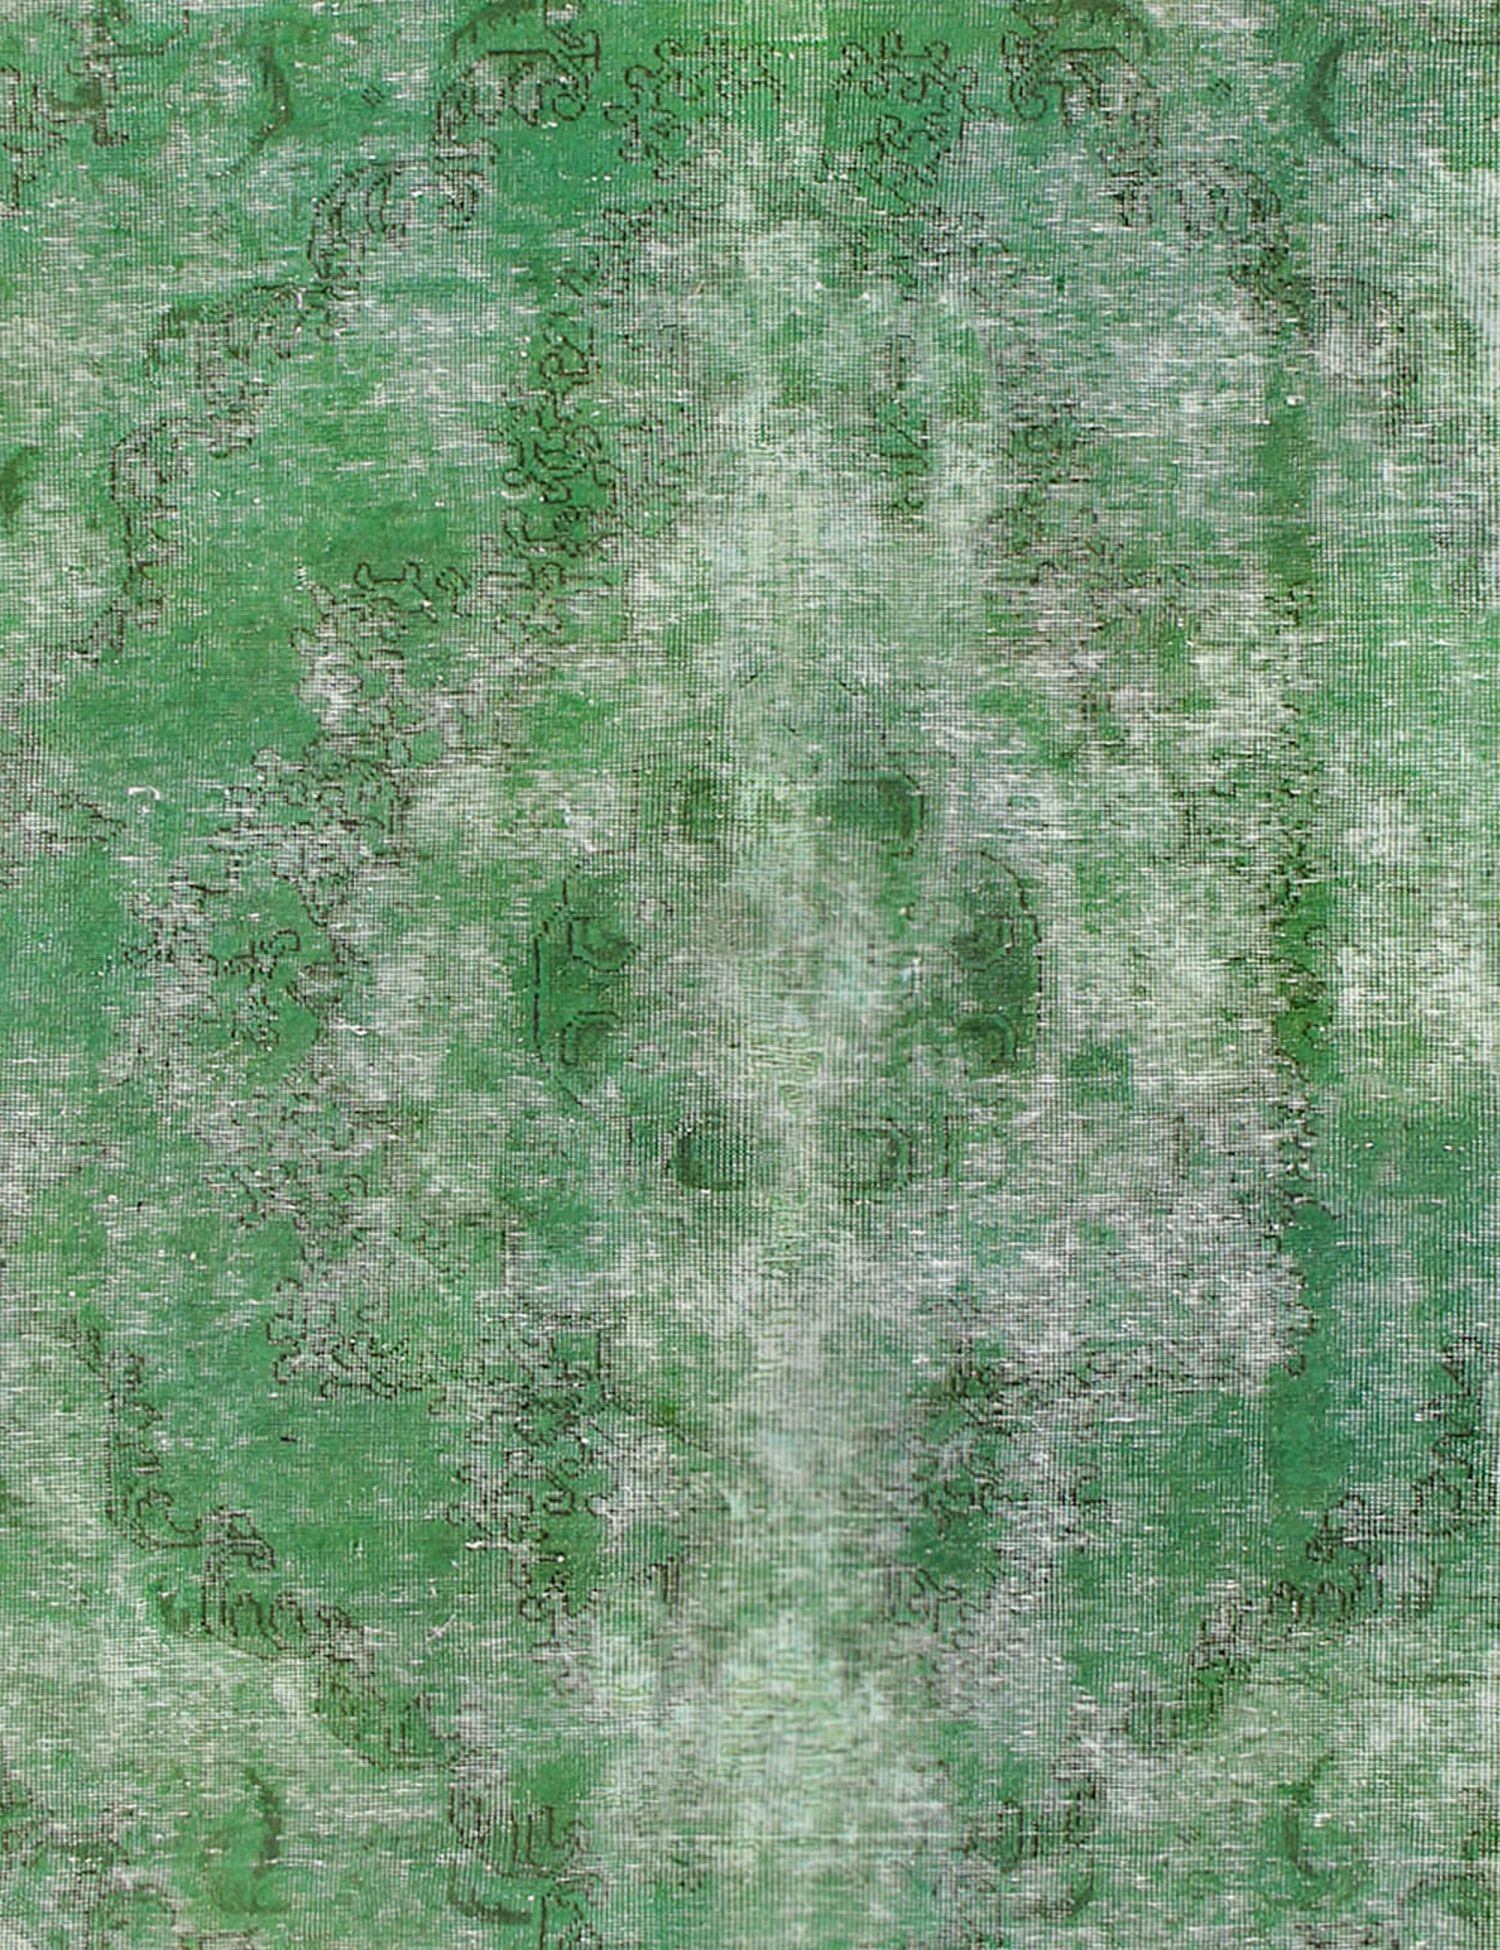 Persischer Vintage Teppich  grün <br/>287 x 208 cm